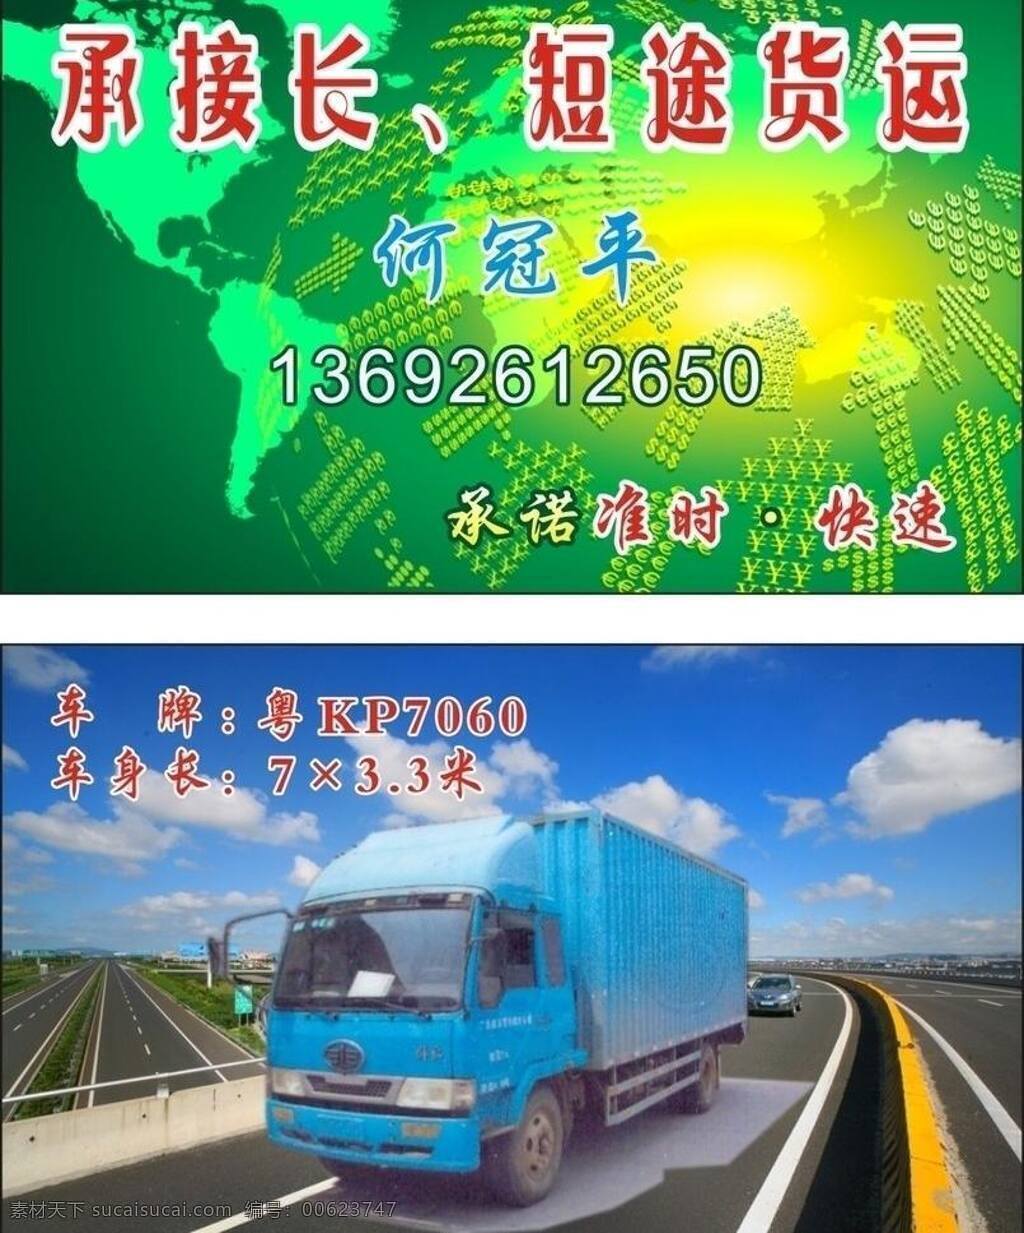 名片 高速公路 货车 箭头 承接长 短途货运 承诺快速 准时 雄鸡 矢量 名片卡 广告设计名片